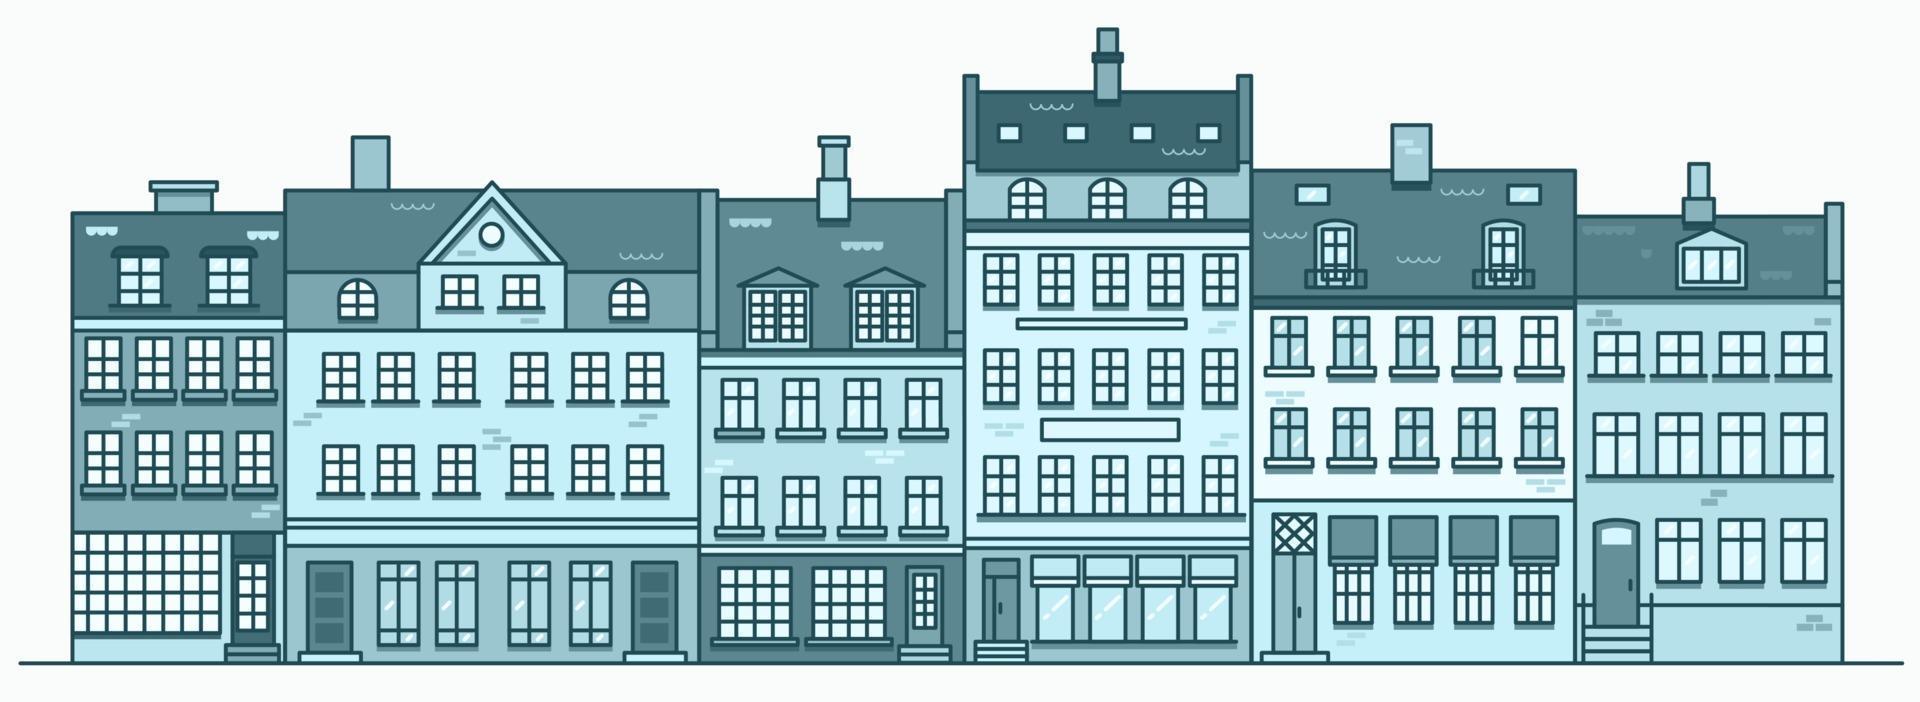 skyline di edifici di amsterdam. paesaggio urbano lineare con varie case a schiera. illustrazione di contorno con vecchi edifici olandesi. vettore